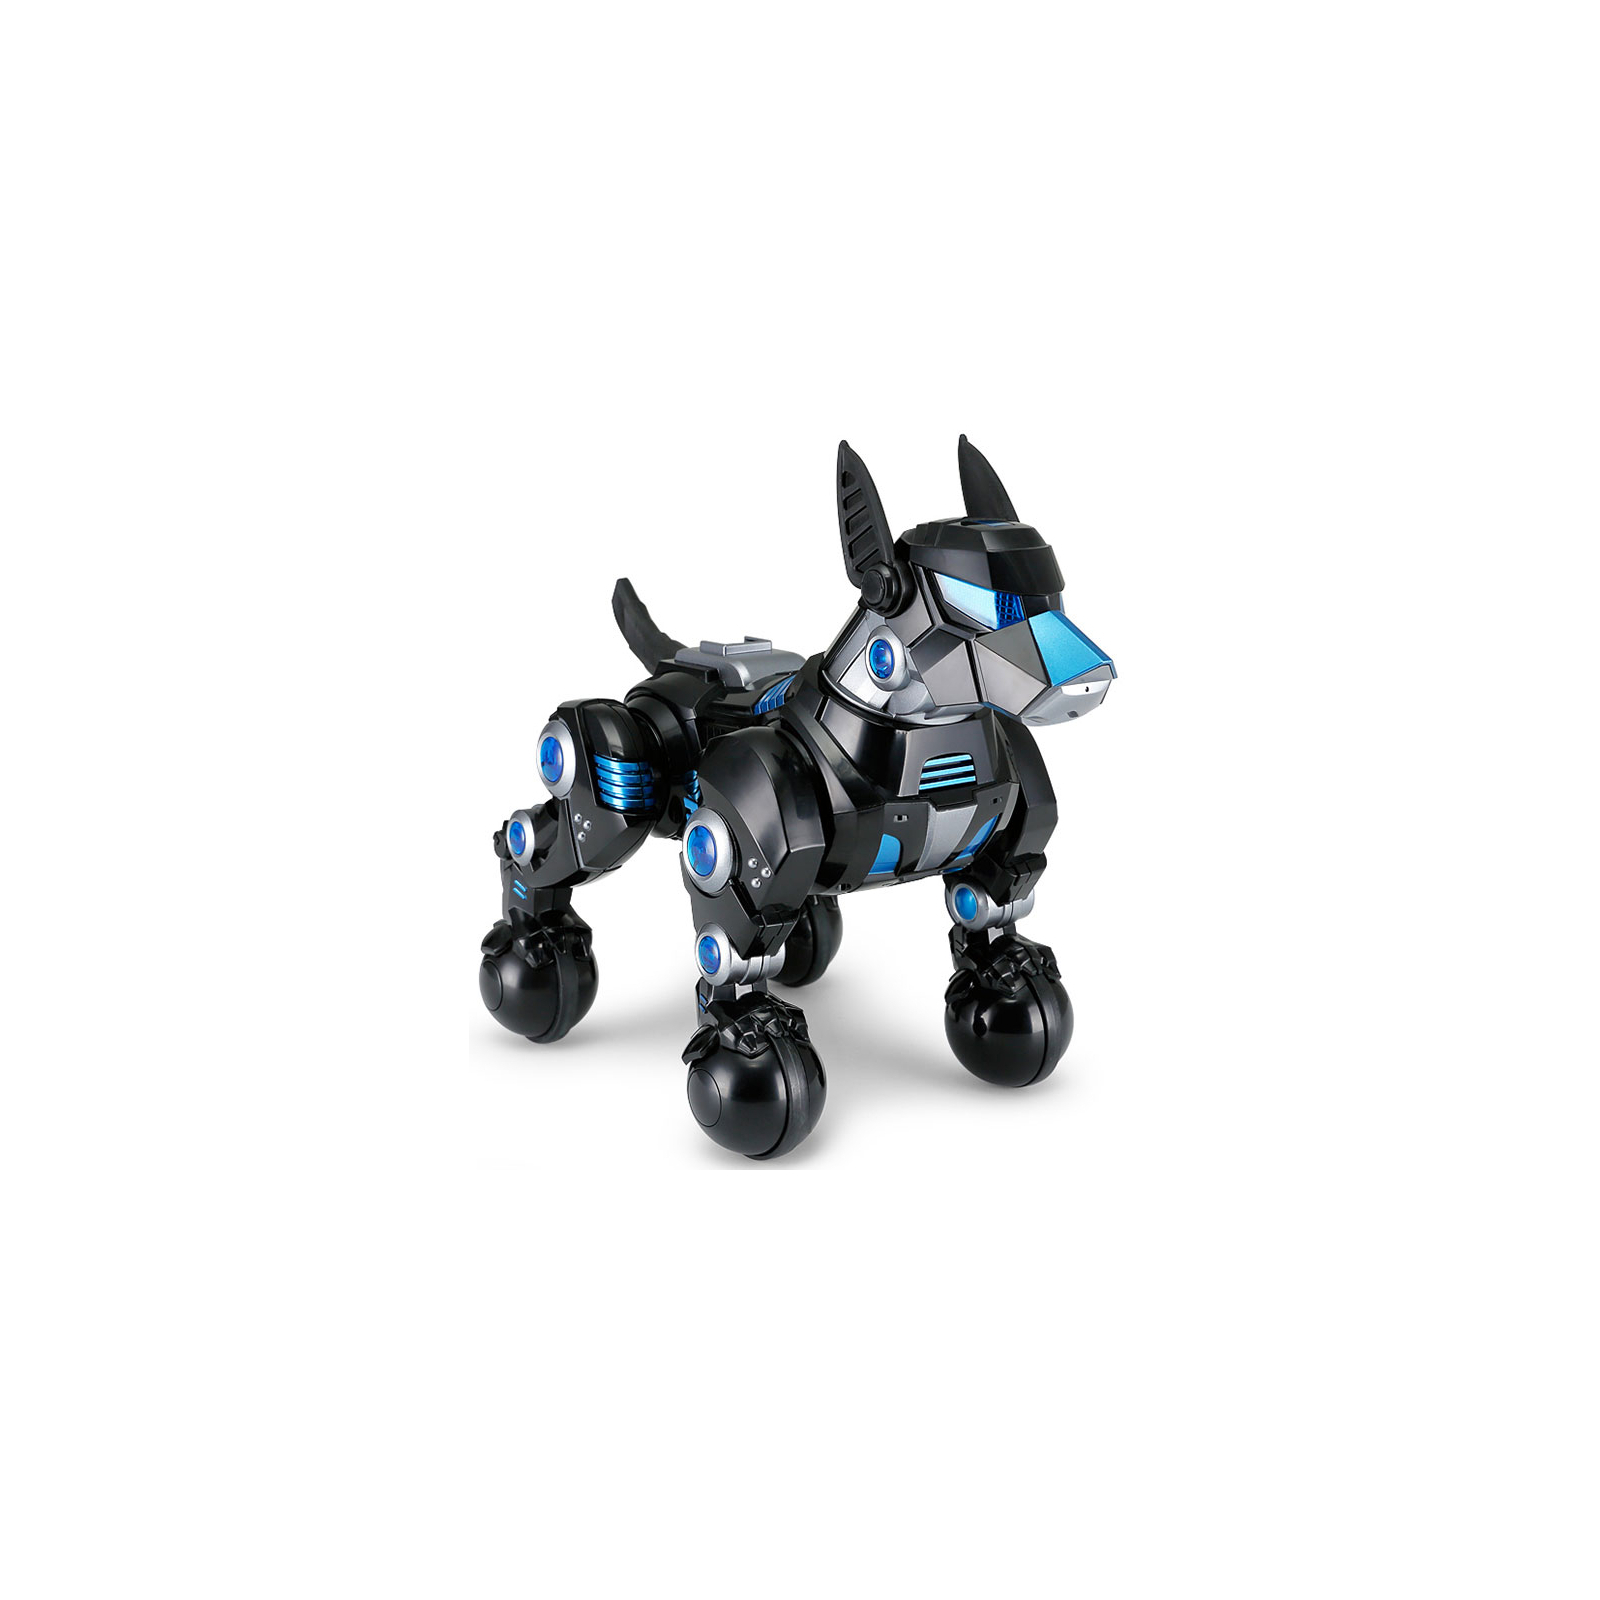 Интерактивная игрушка Rastar Робот DOGO пес черный (77960 black) изображение 2